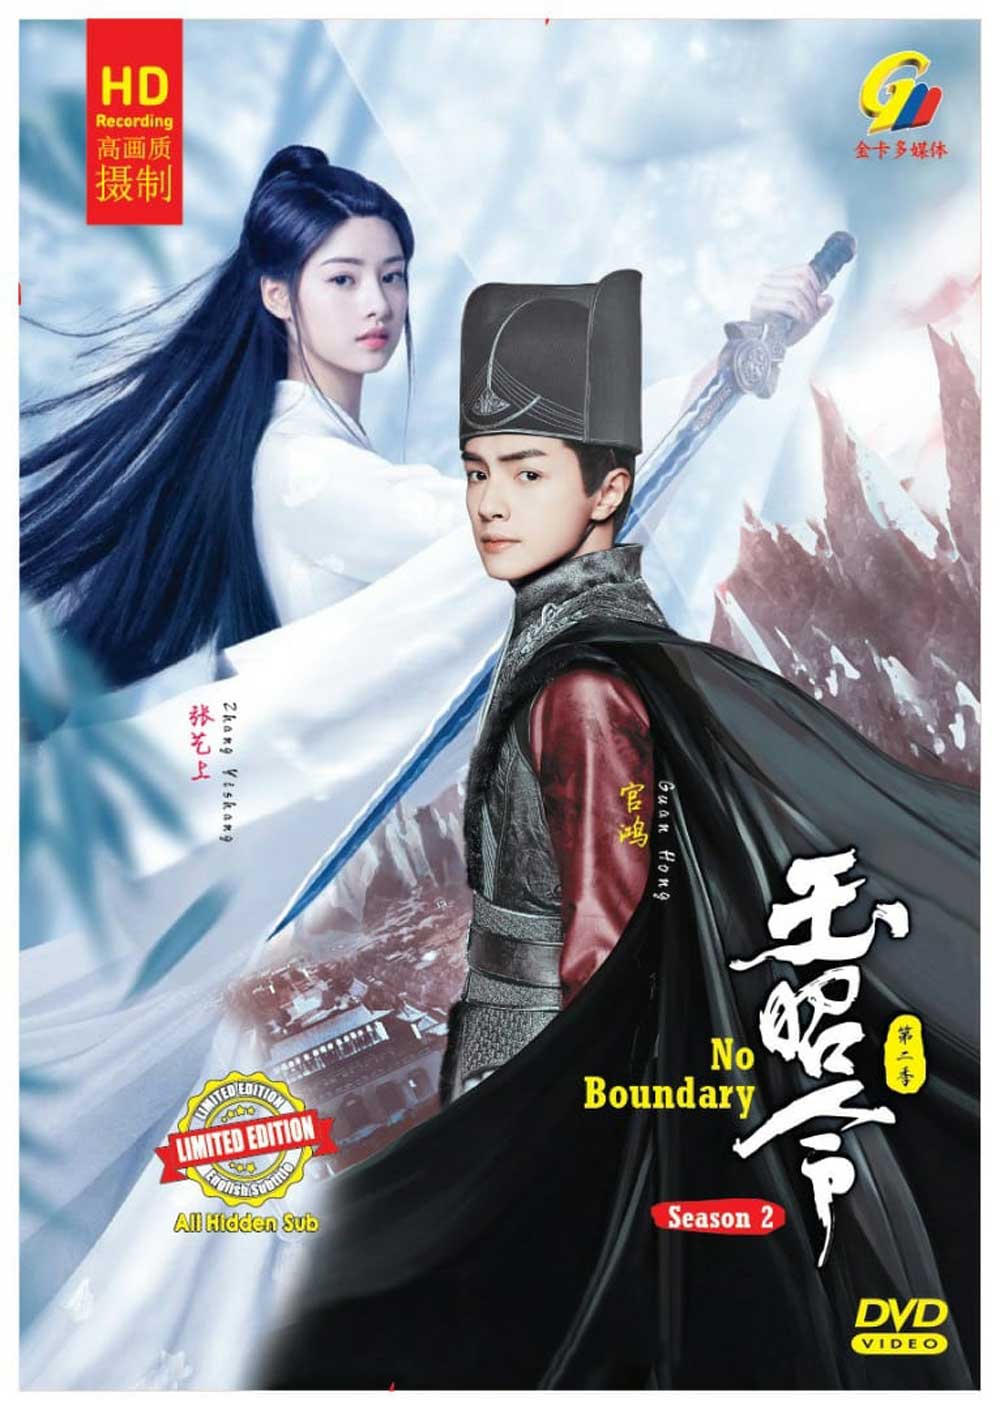 No Boundary Season 2 (DVD) (2021) China TV Series